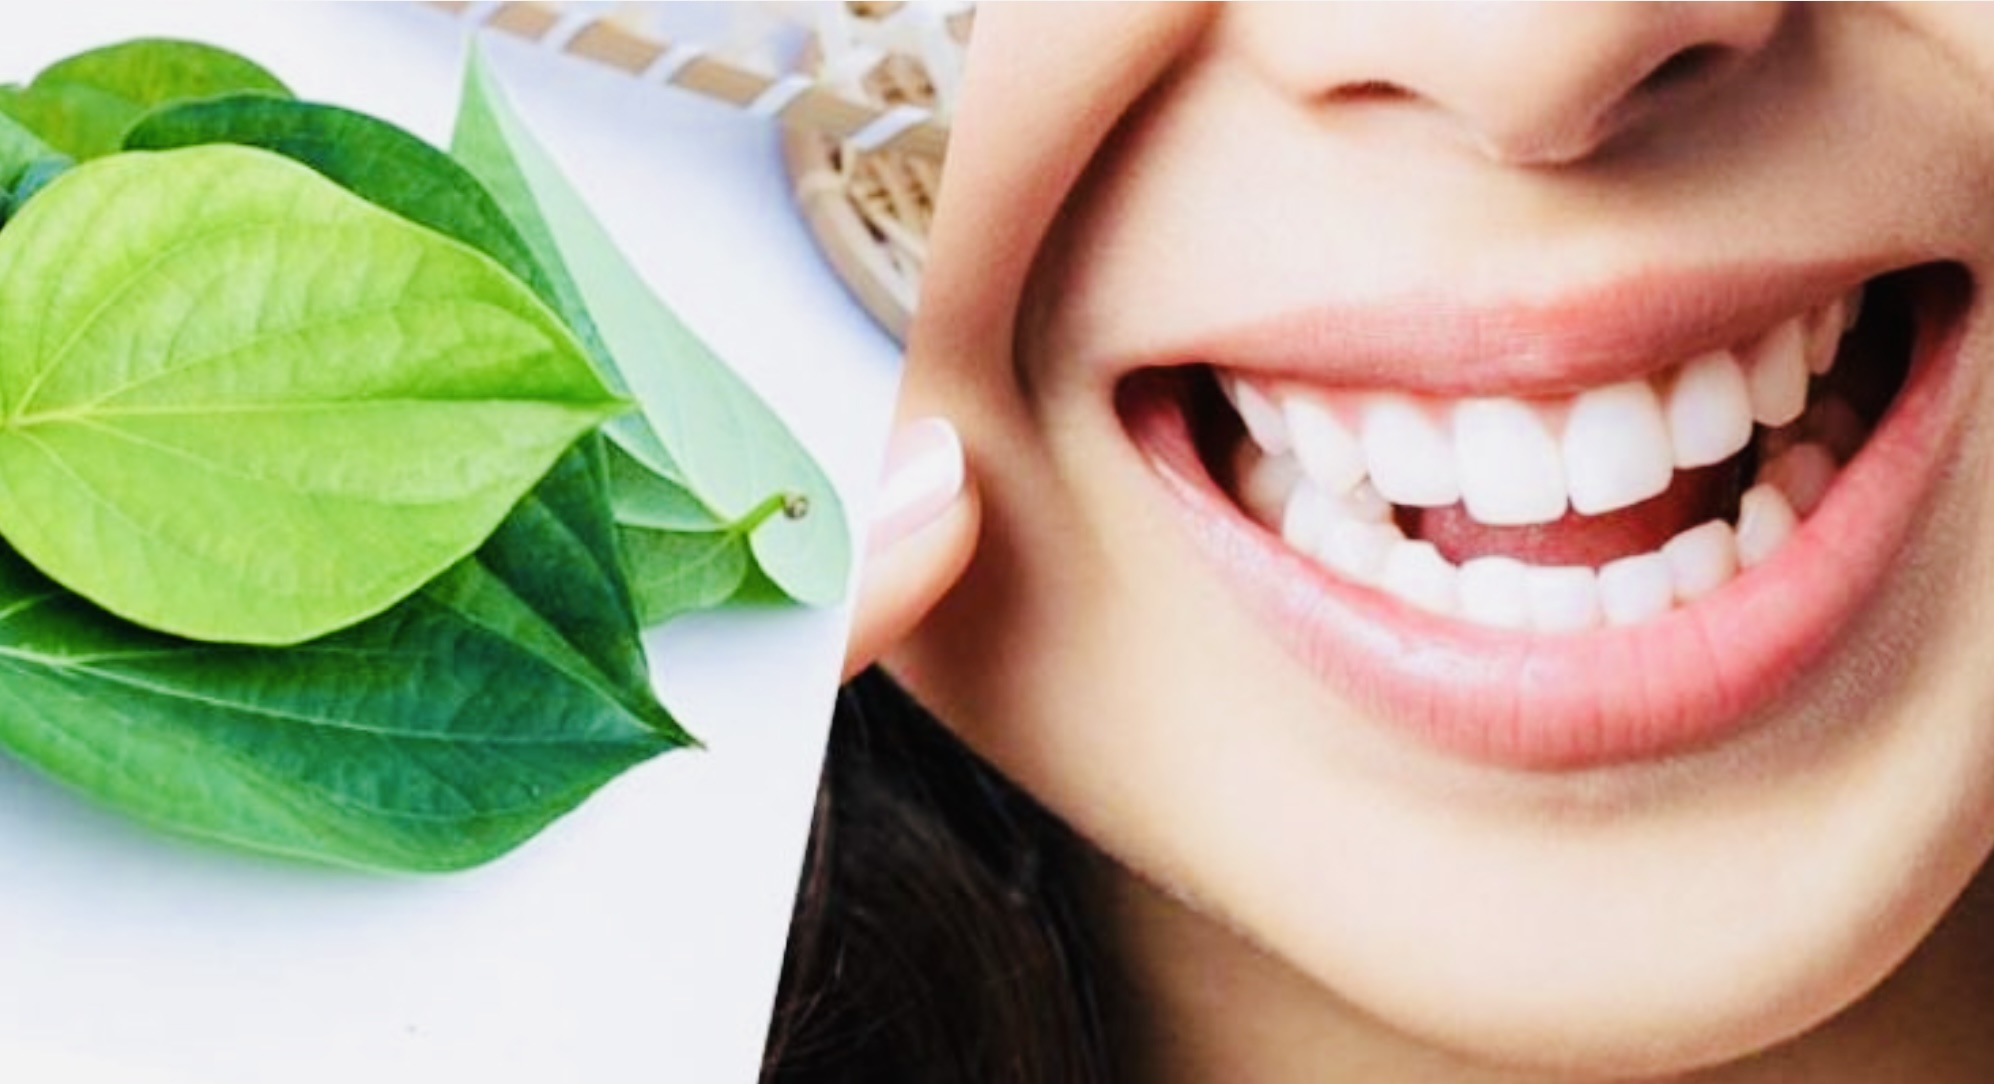 Manfaat Daun Sirih untuk Kesehatan Gigi dan Mulut, Dicoba Yuk Biar Sehat